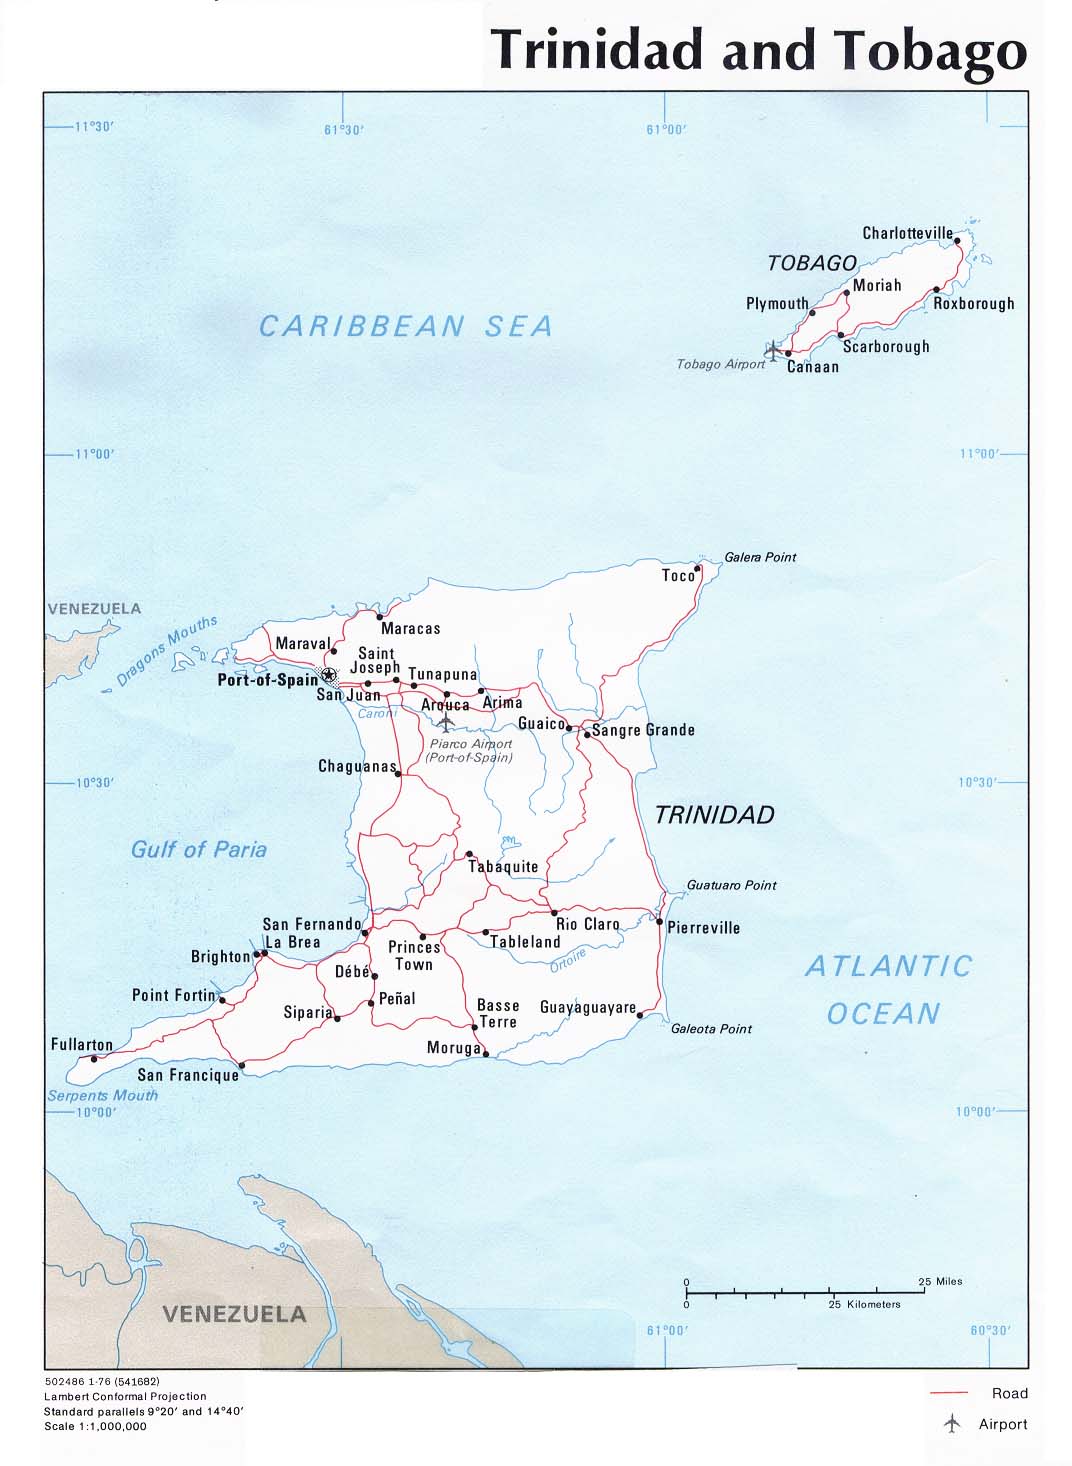 Trinidad and Tobago Political Map